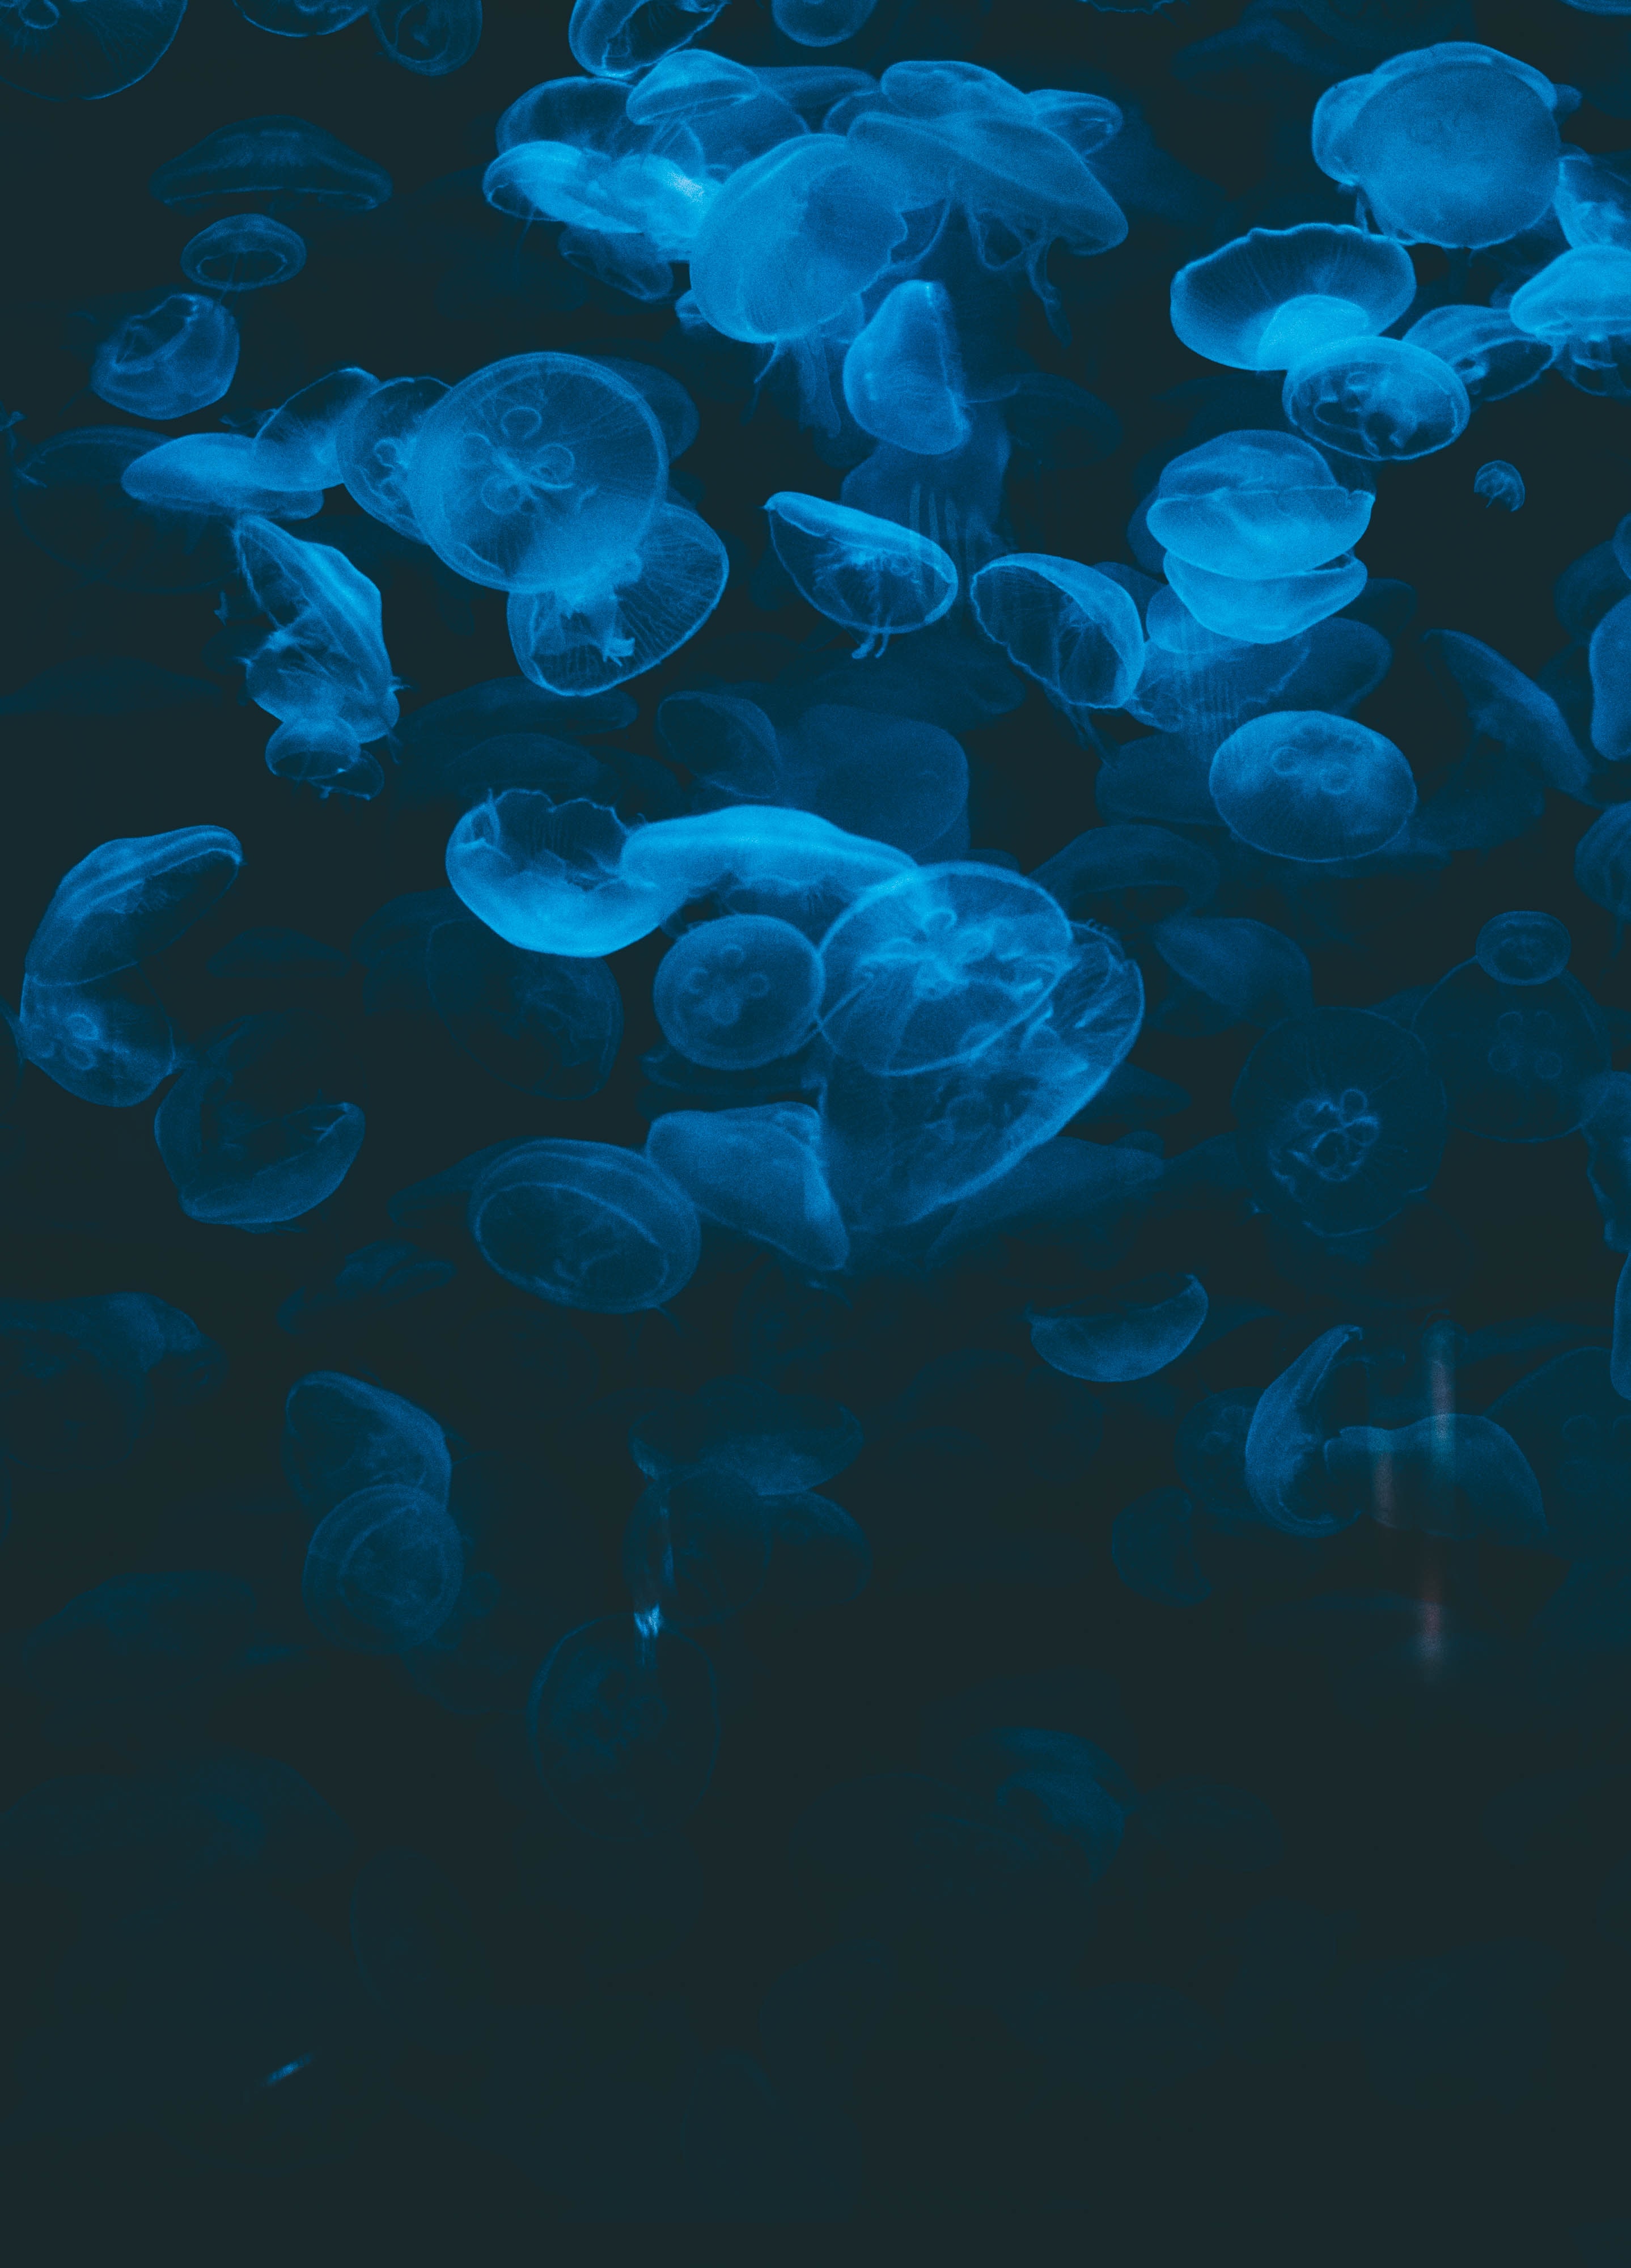 jellyfish, animals, blue, transparent, dark, under water, underwater 4K